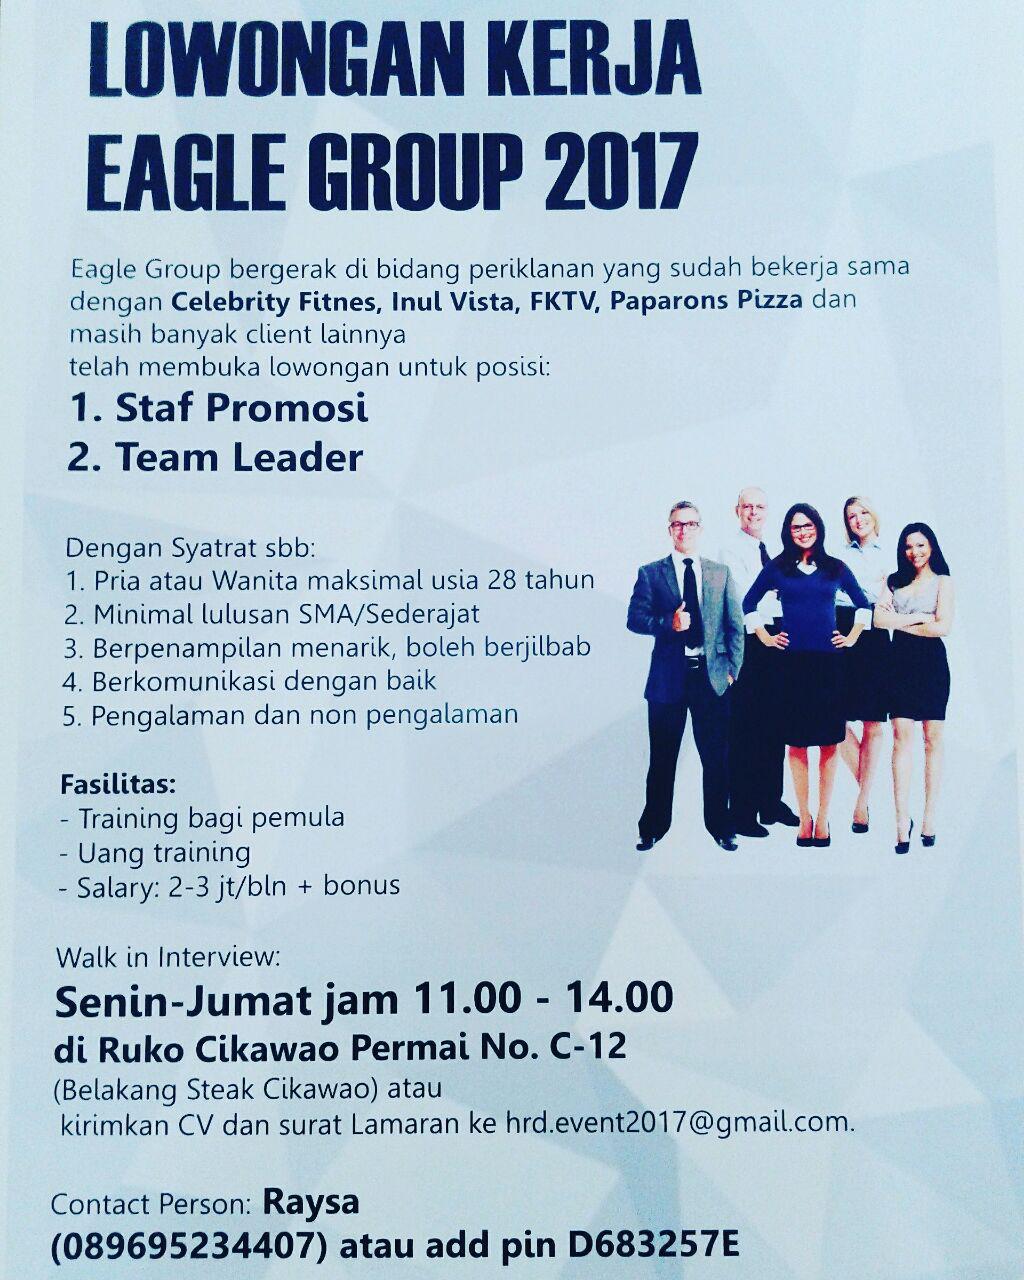 Lowongan Kerja Eagle Group Bandung Mei 2017 - Info 